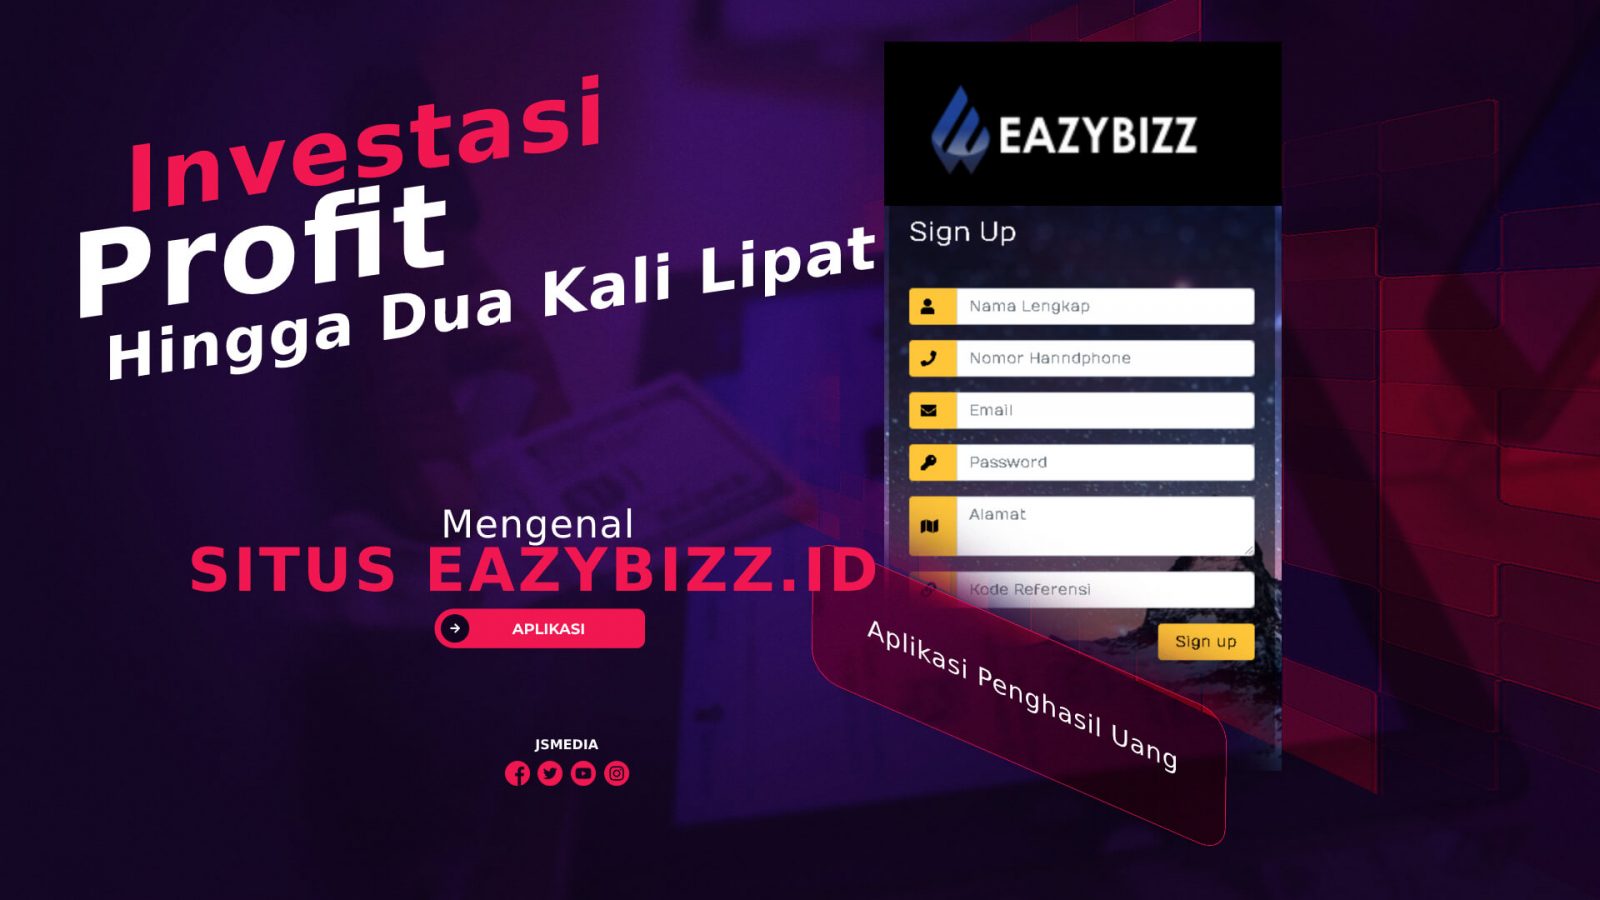 Mengenal Situs EazyBizz.id, Investasi Dengan Profit Hingga Dua Kali Lipat